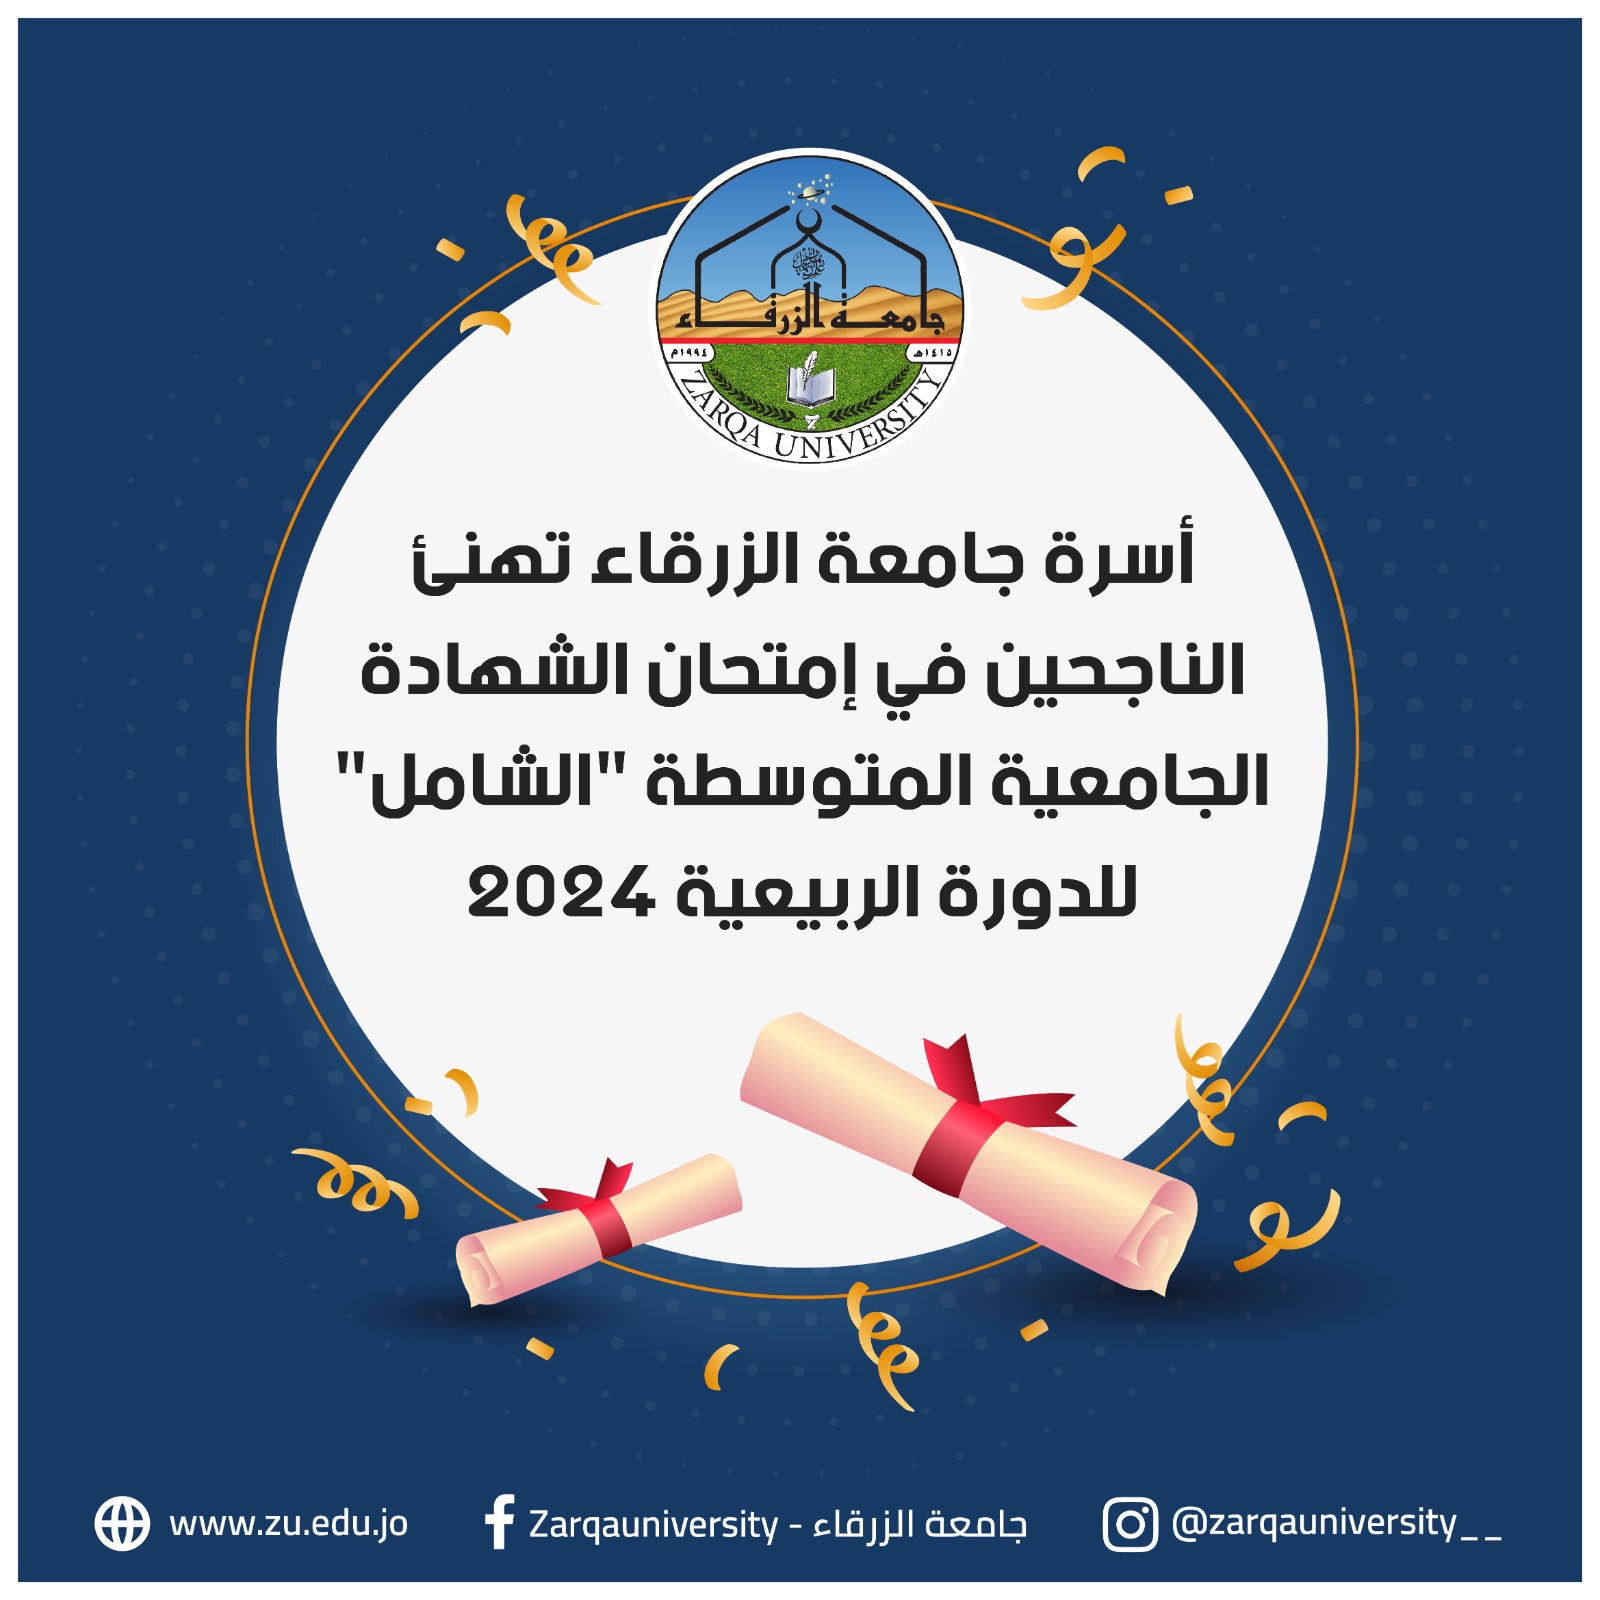 جامعة الزرقاء تهنئ الناجحين في امتحان الشامل وتعلن عن خصومات تشجيعية